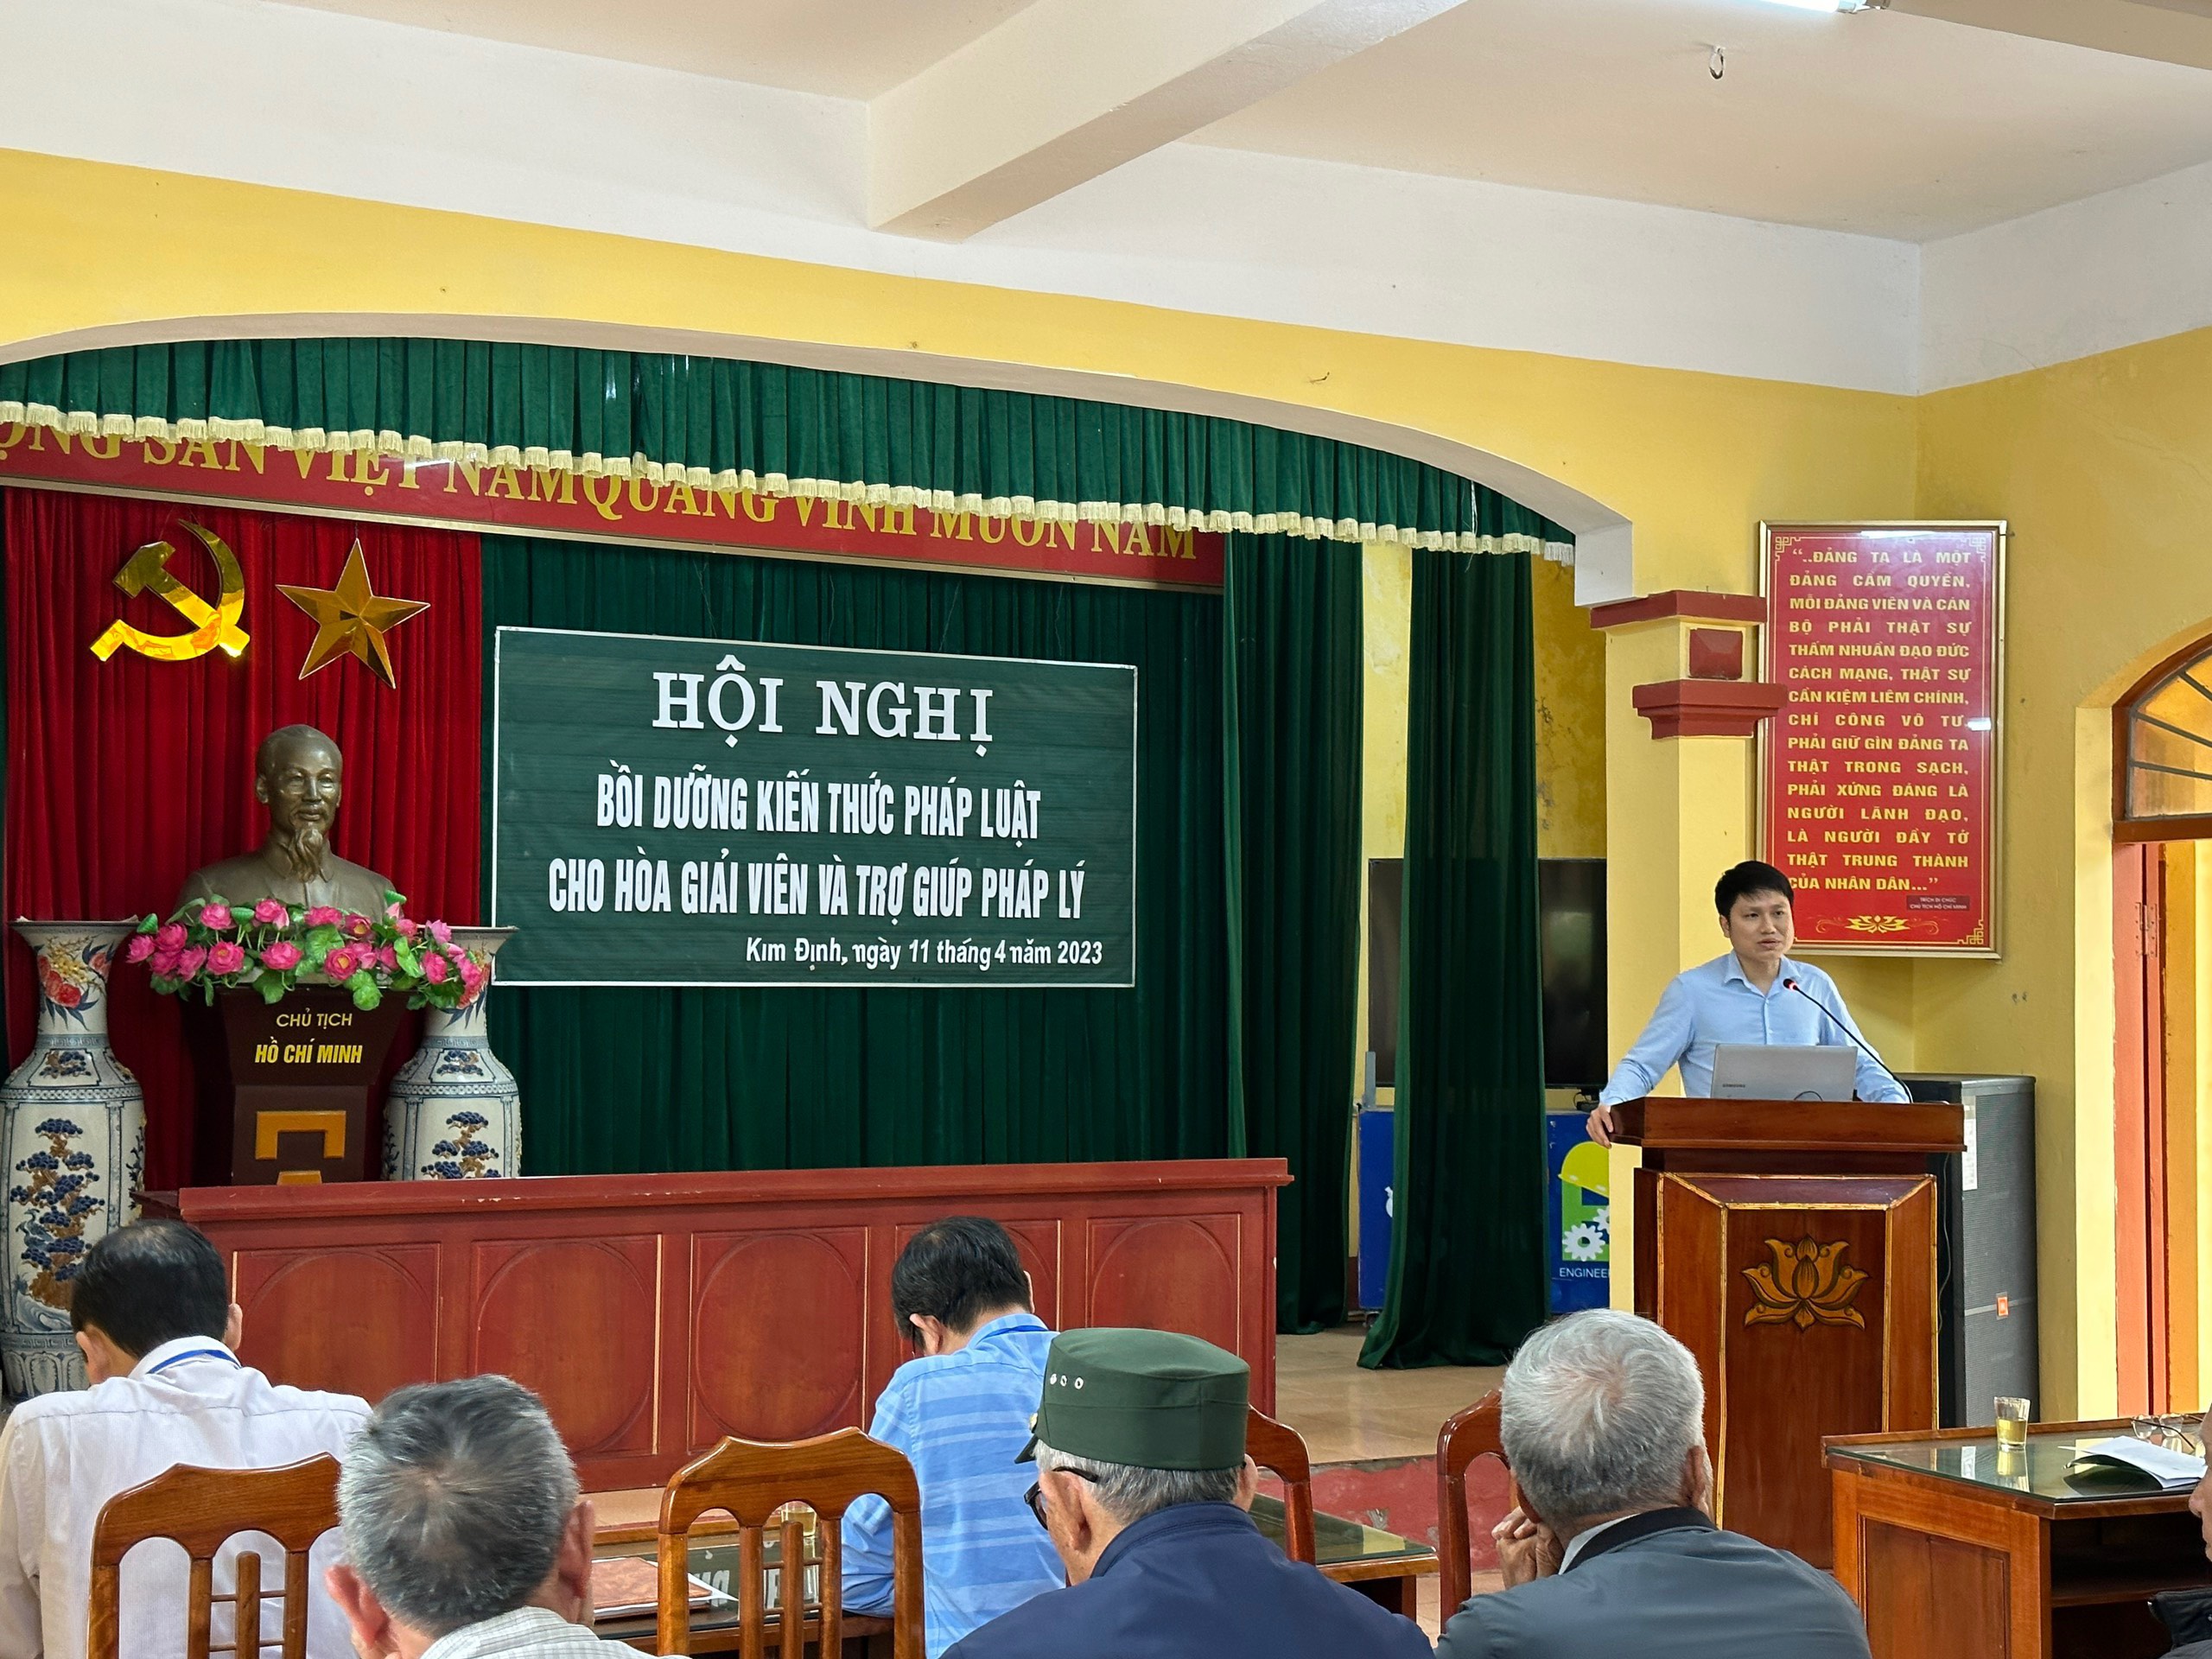 Hội nghị bồi dưỡng kiến thức pháp luật cho Hoà giải viên và và trợ giúp pháp lý tại các xã trên địa bàn huyện Kim Sơn